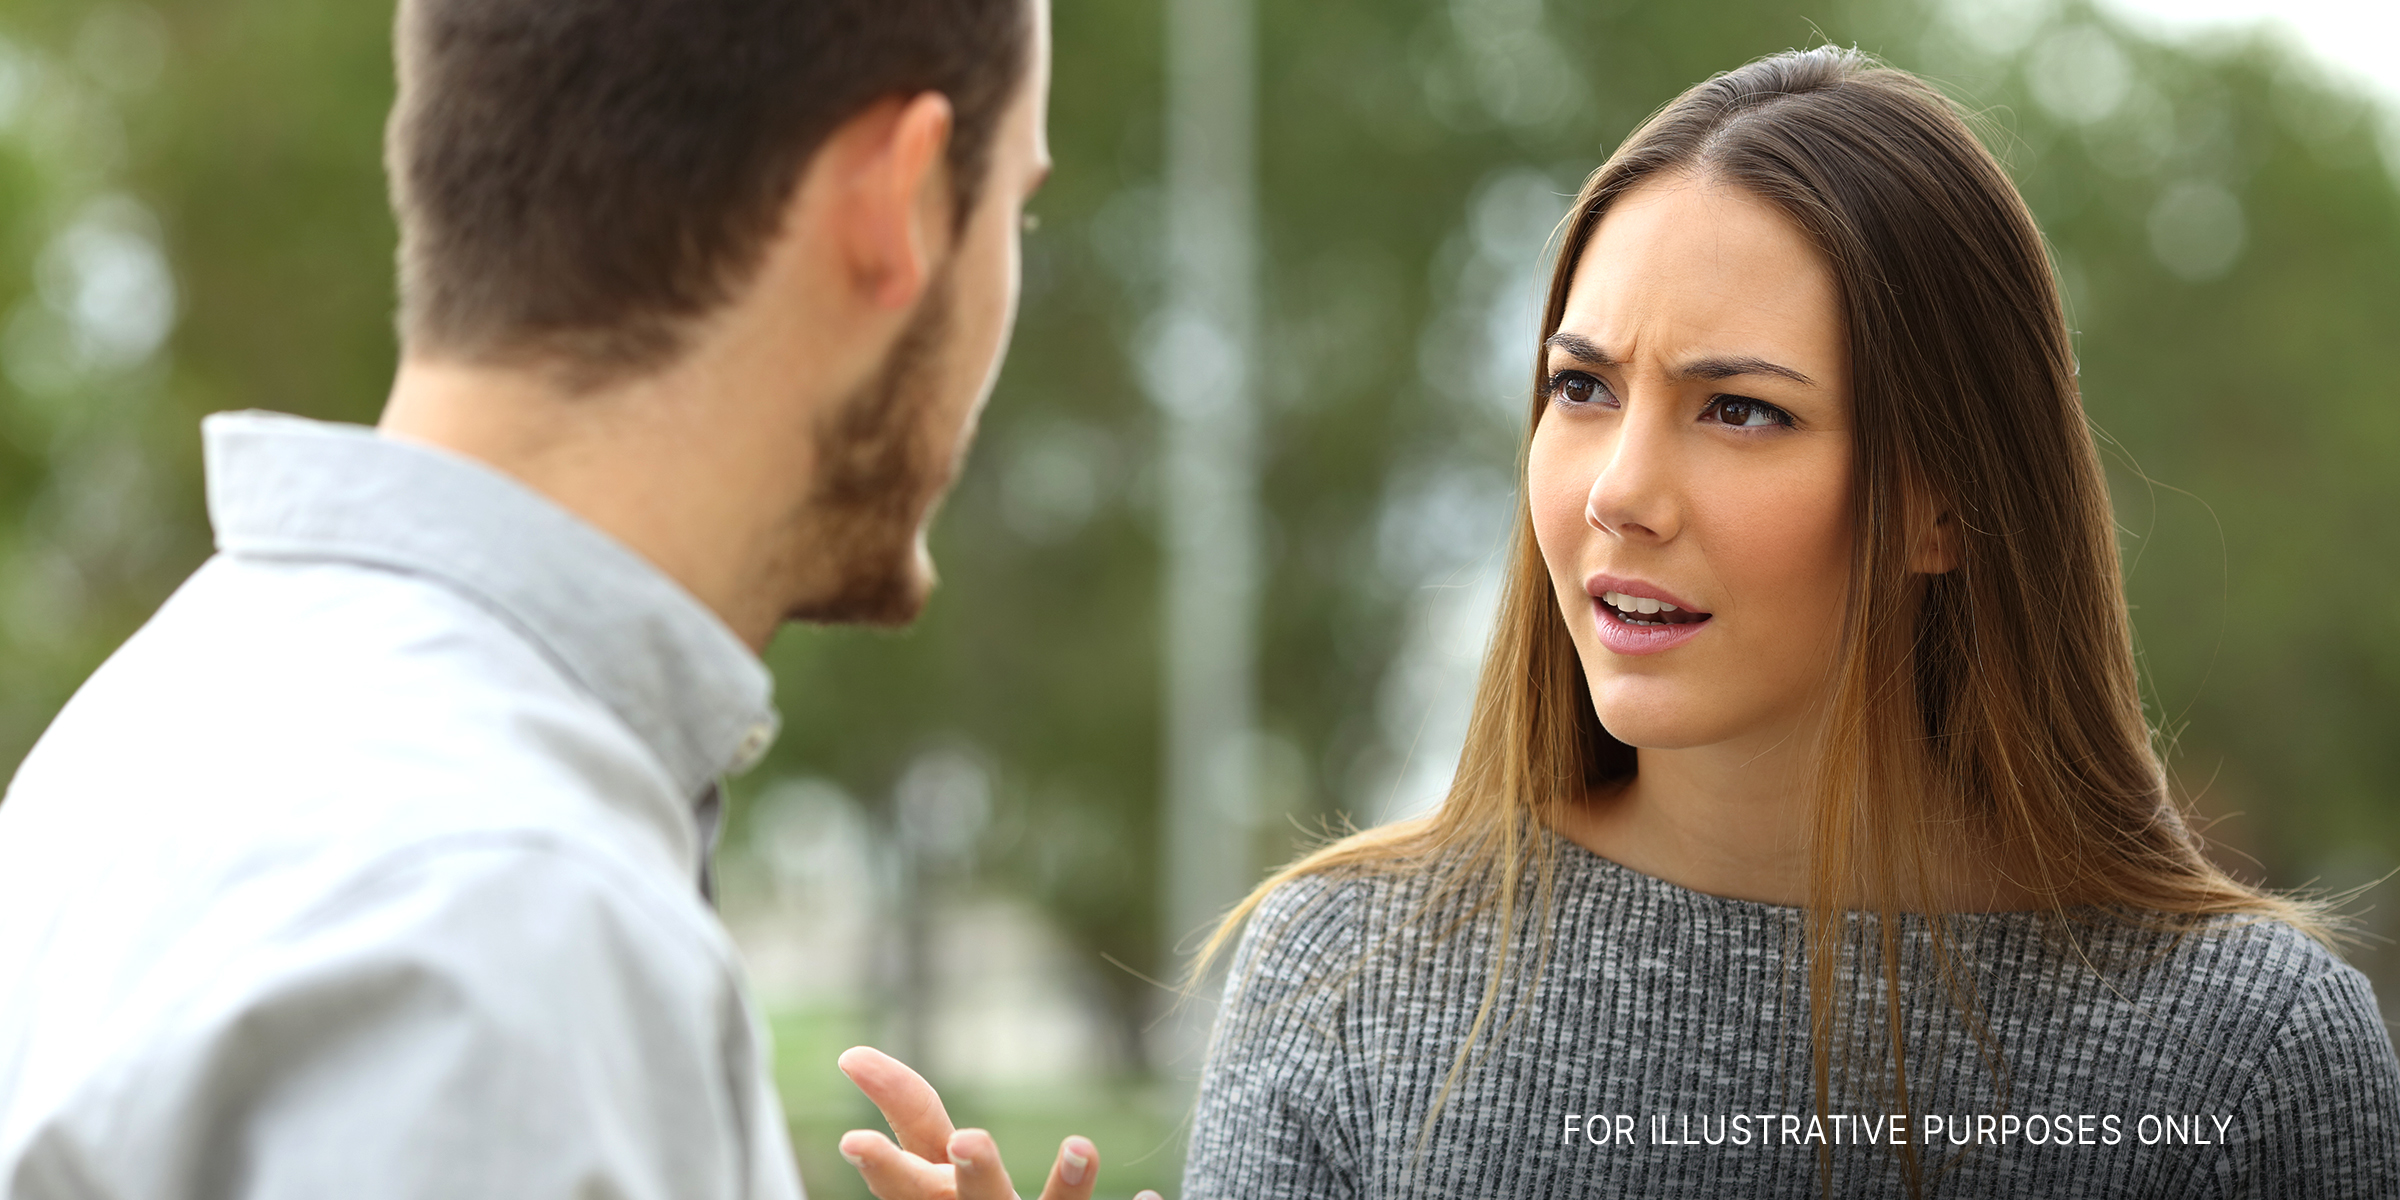 Schockierte Frau im Gespräch mit Mann | Quelle: Shutterstock